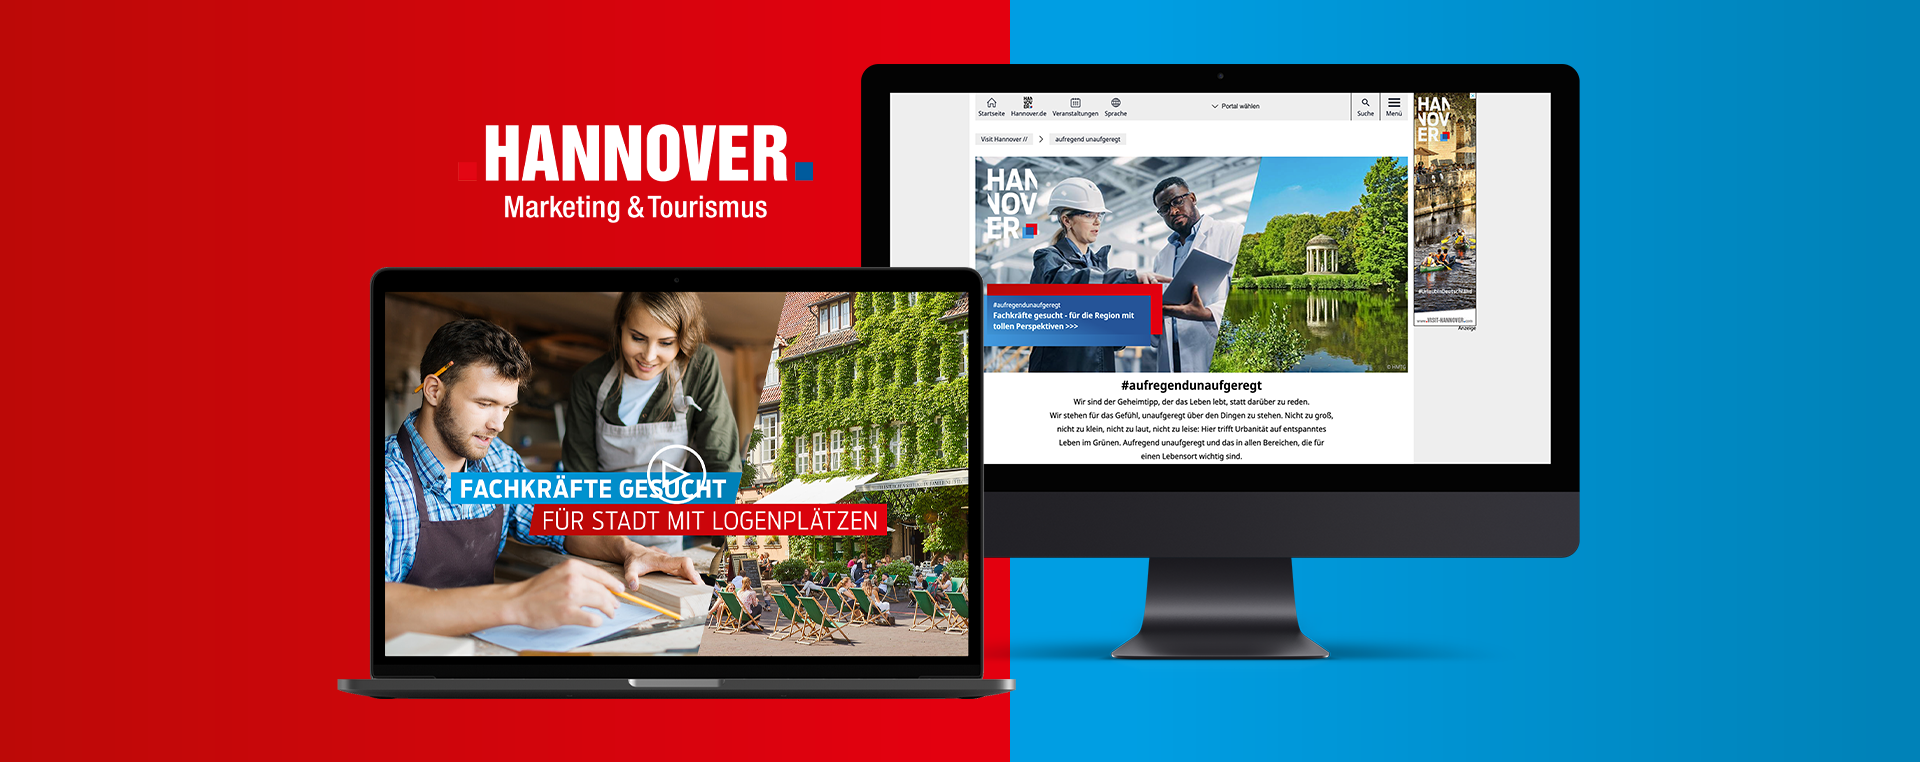 Hannover Marketing und Tourismus Fachkräfte Kampagne